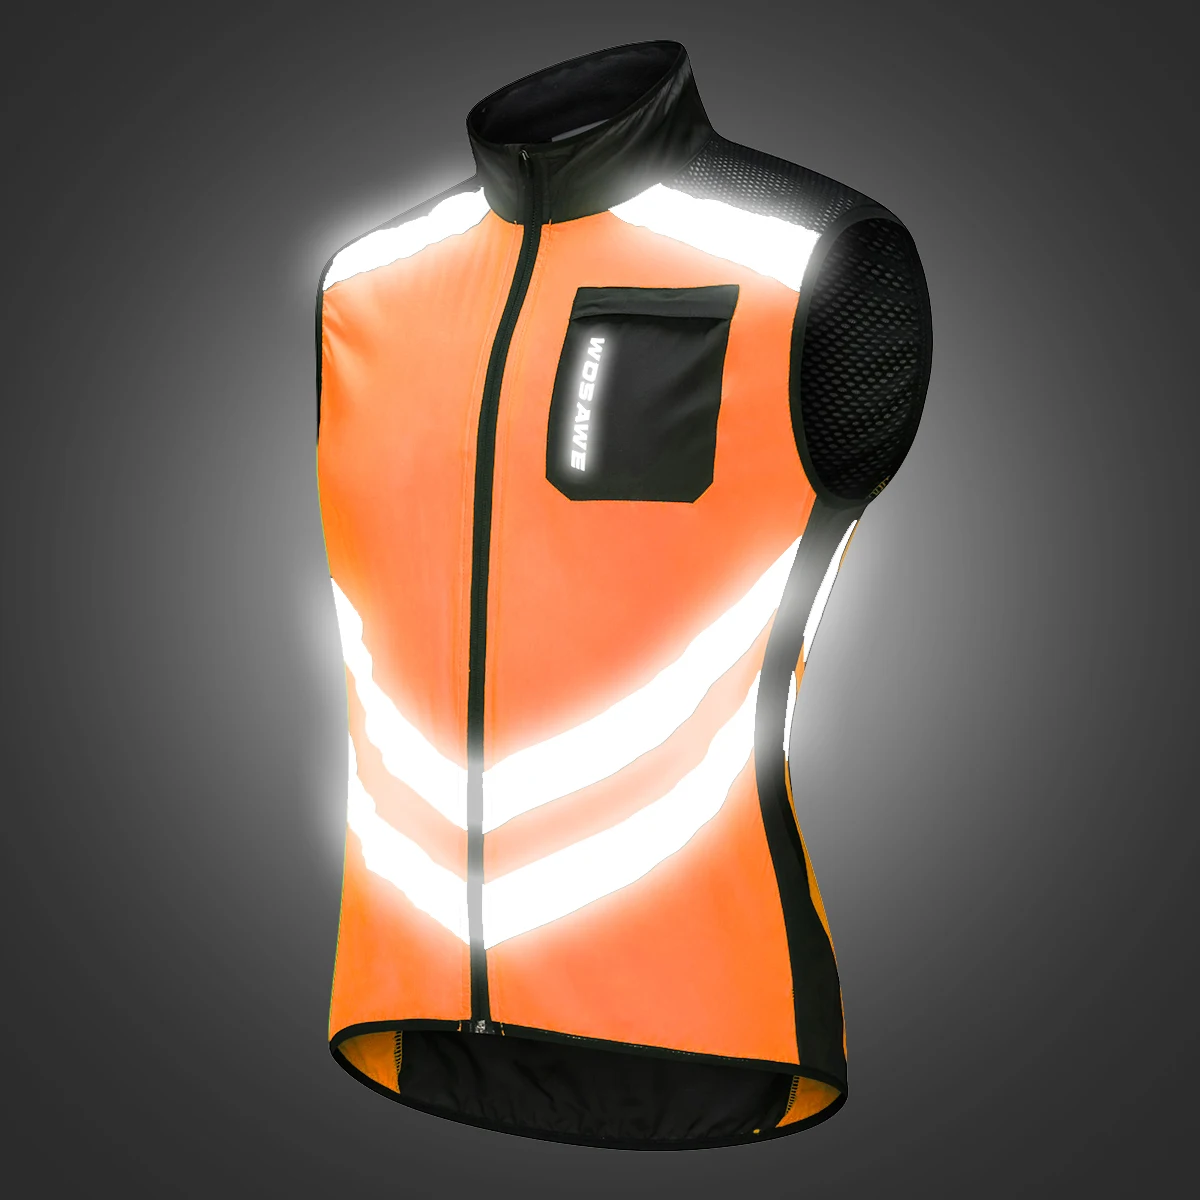 WOSAWE велосипедный жилет светоотражающий ветрозащитный водонепроницаемый дышащий Одежда MTB велосипед куртка без рукавов жилет безопасности для мужчин и женщин - Цвет: BL208-Orange